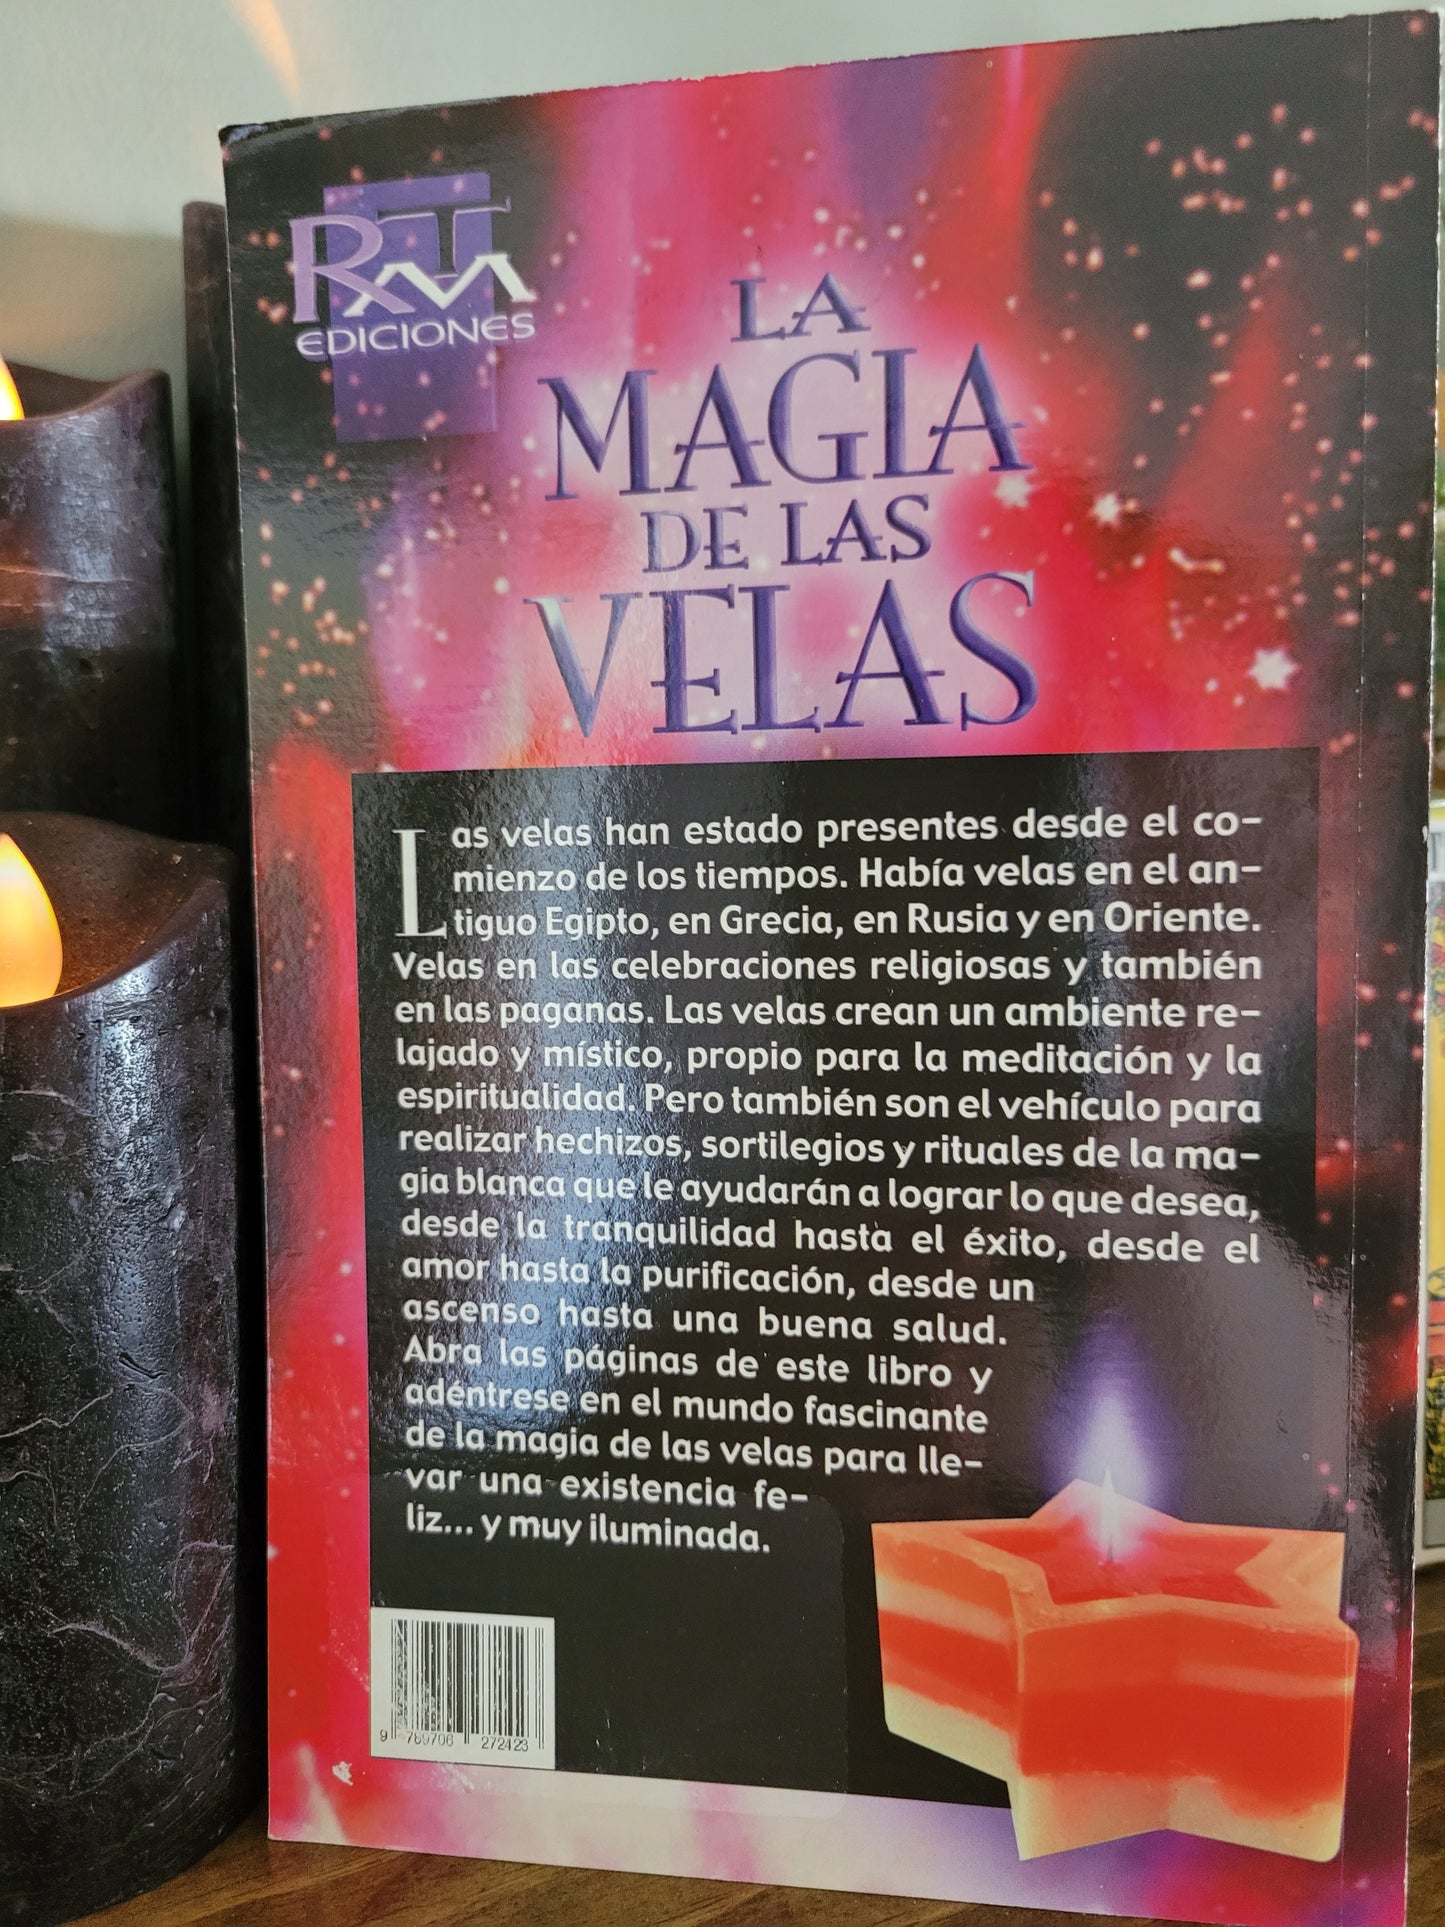 La Magia de Las Velas (spainsh)